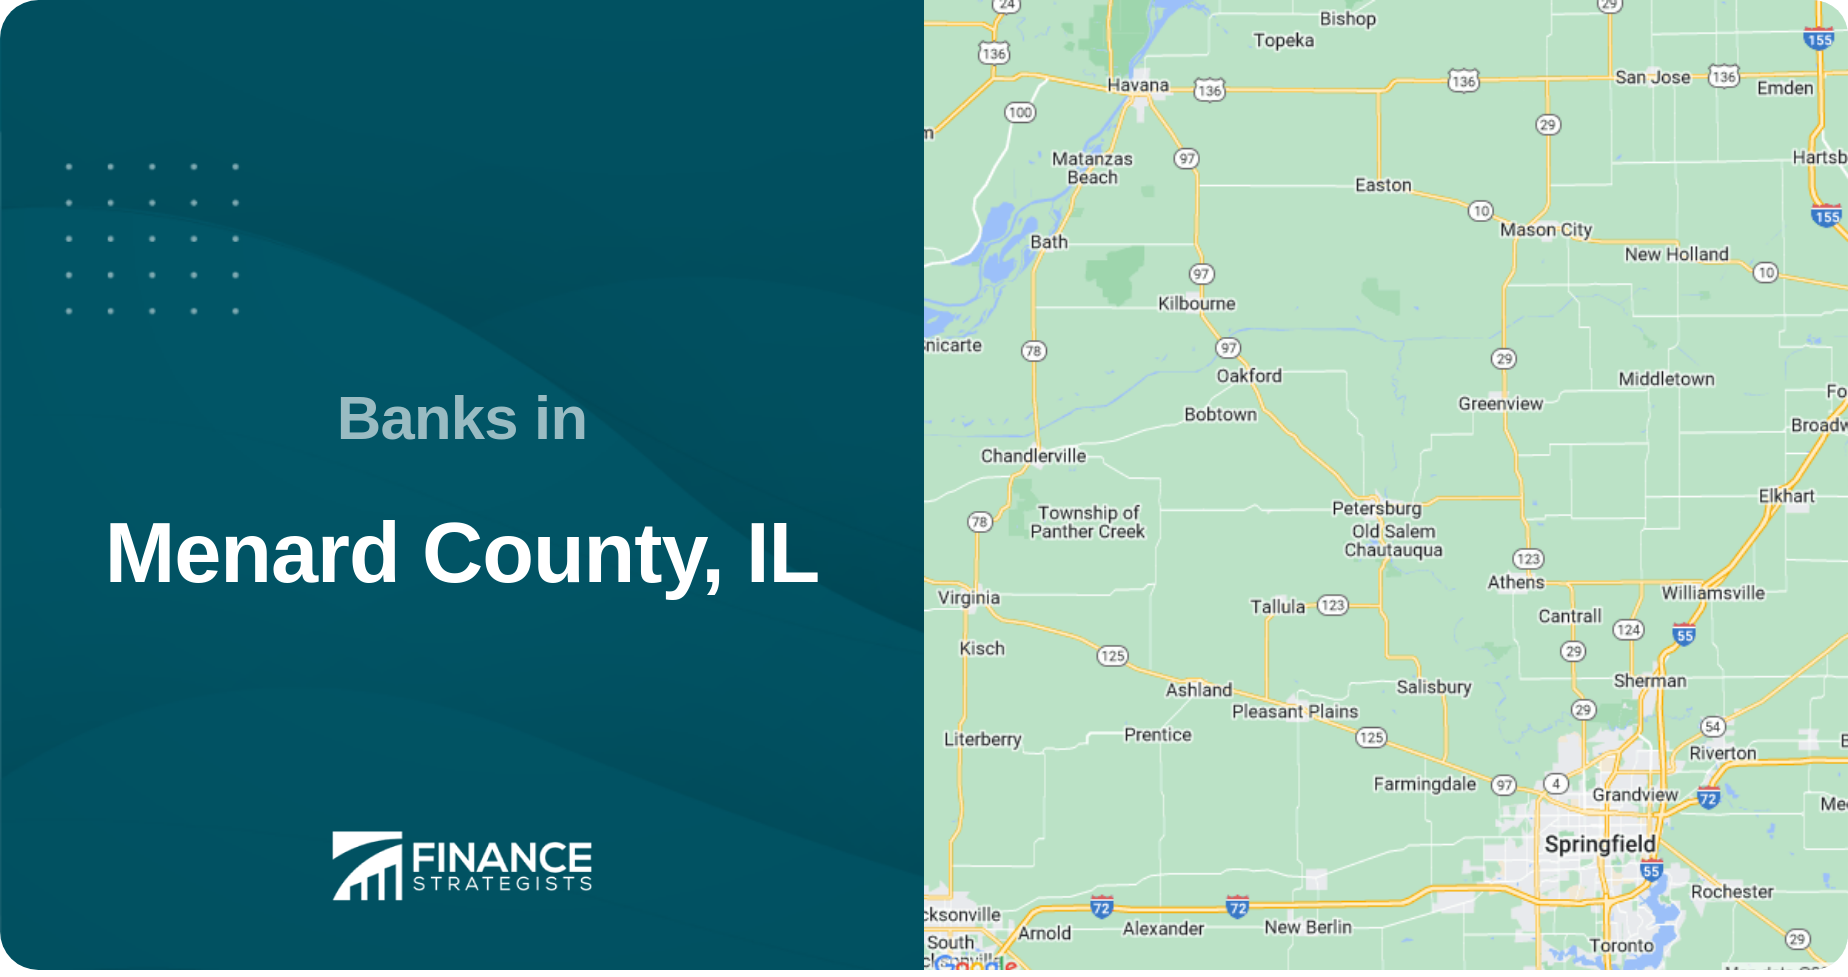 Banks in Menard County, IL